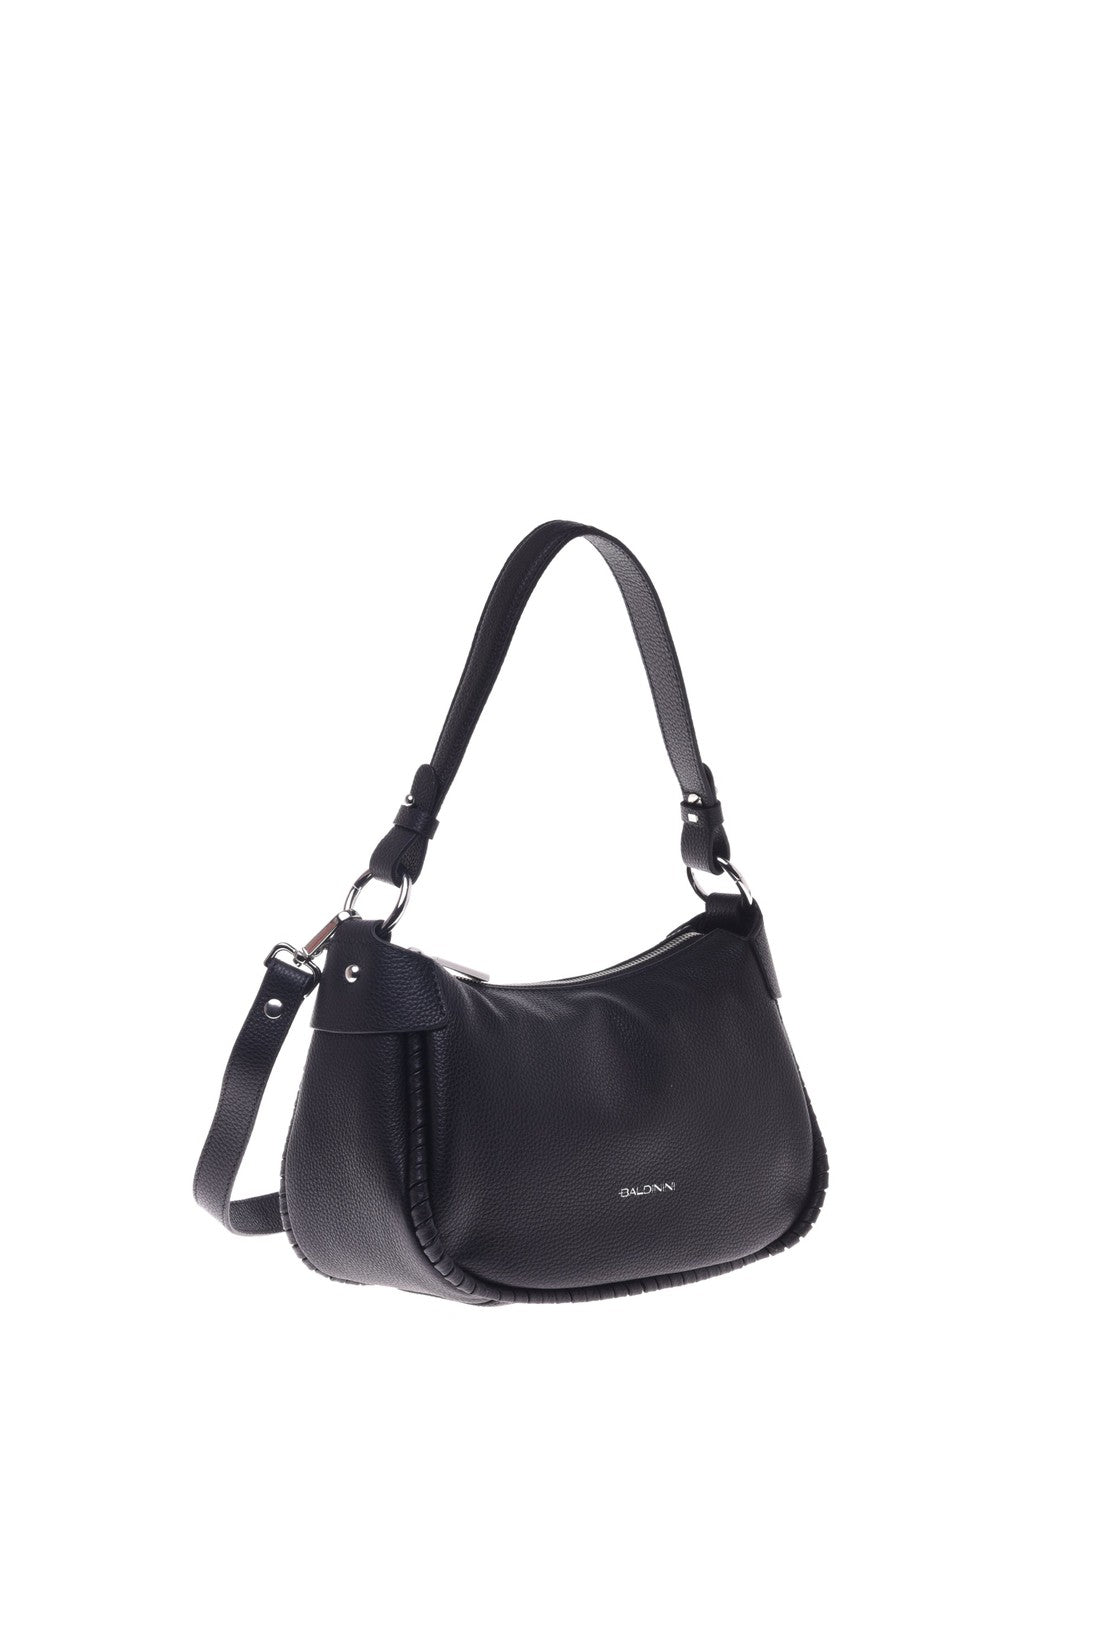 Shoulder bag in black tumbled leather